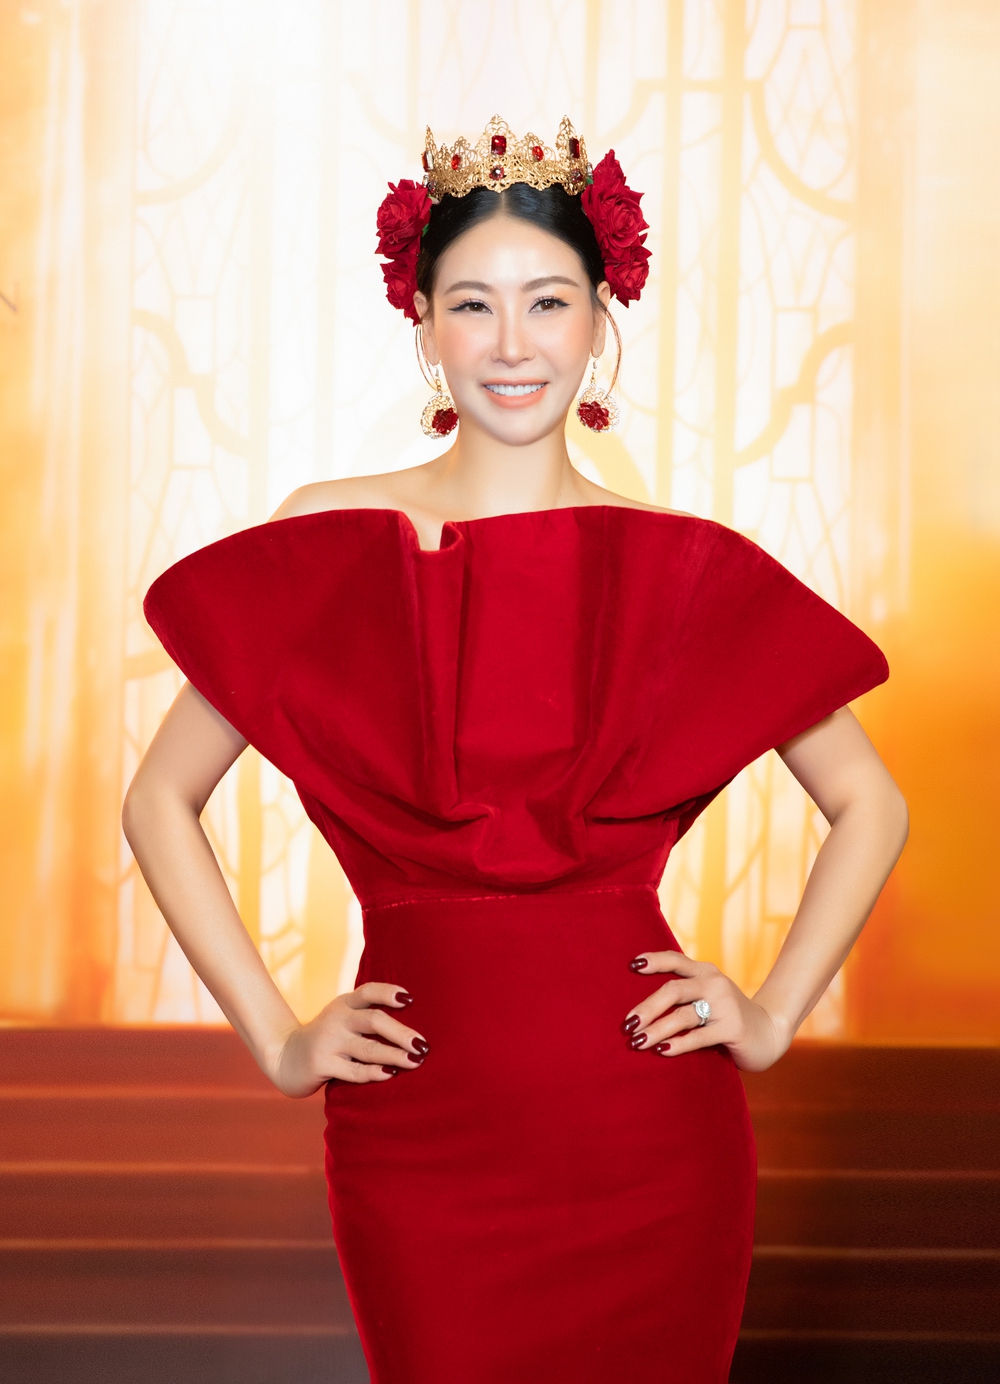 Hoa hậu Hà Kiều Anh diện váy xẻ cao, khoe chân dài gợi cảm - Ảnh 1.